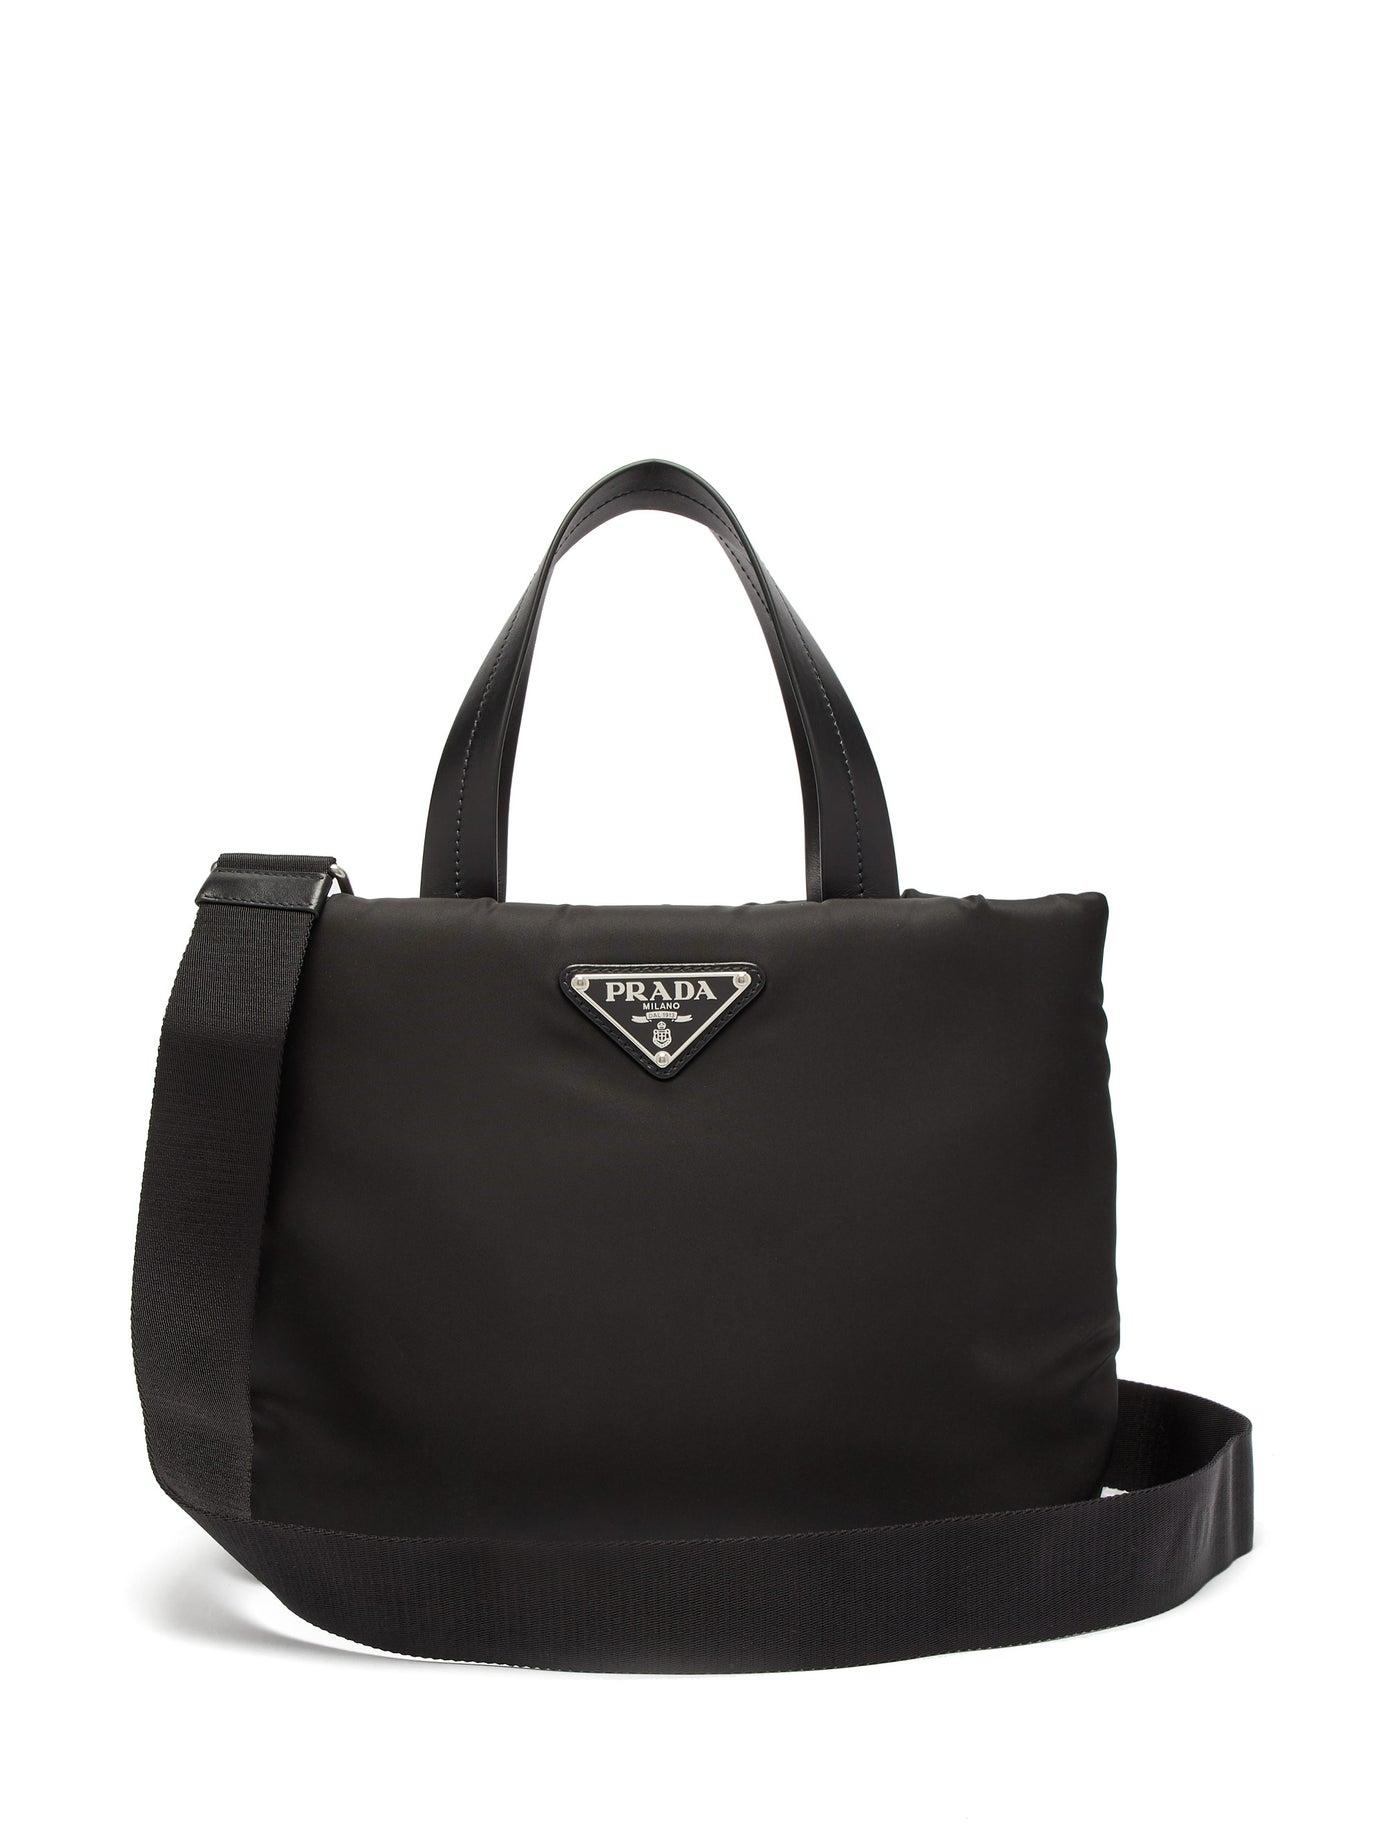 Prada Small Padded Nylon Tote Bag in Black | Lyst